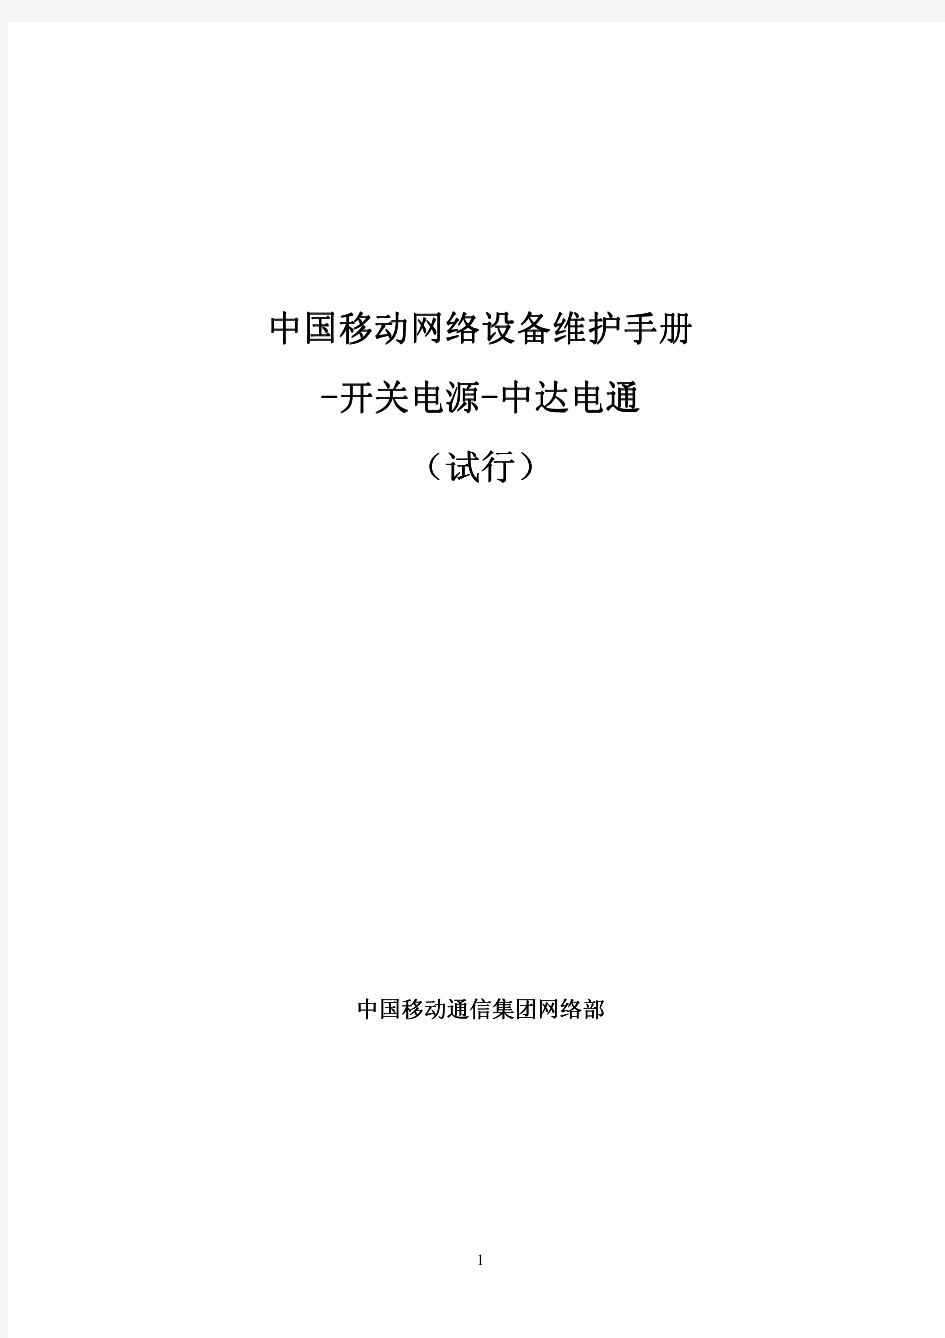 12中国移动网络设备维护手册-开关电源-中达电通(试行)